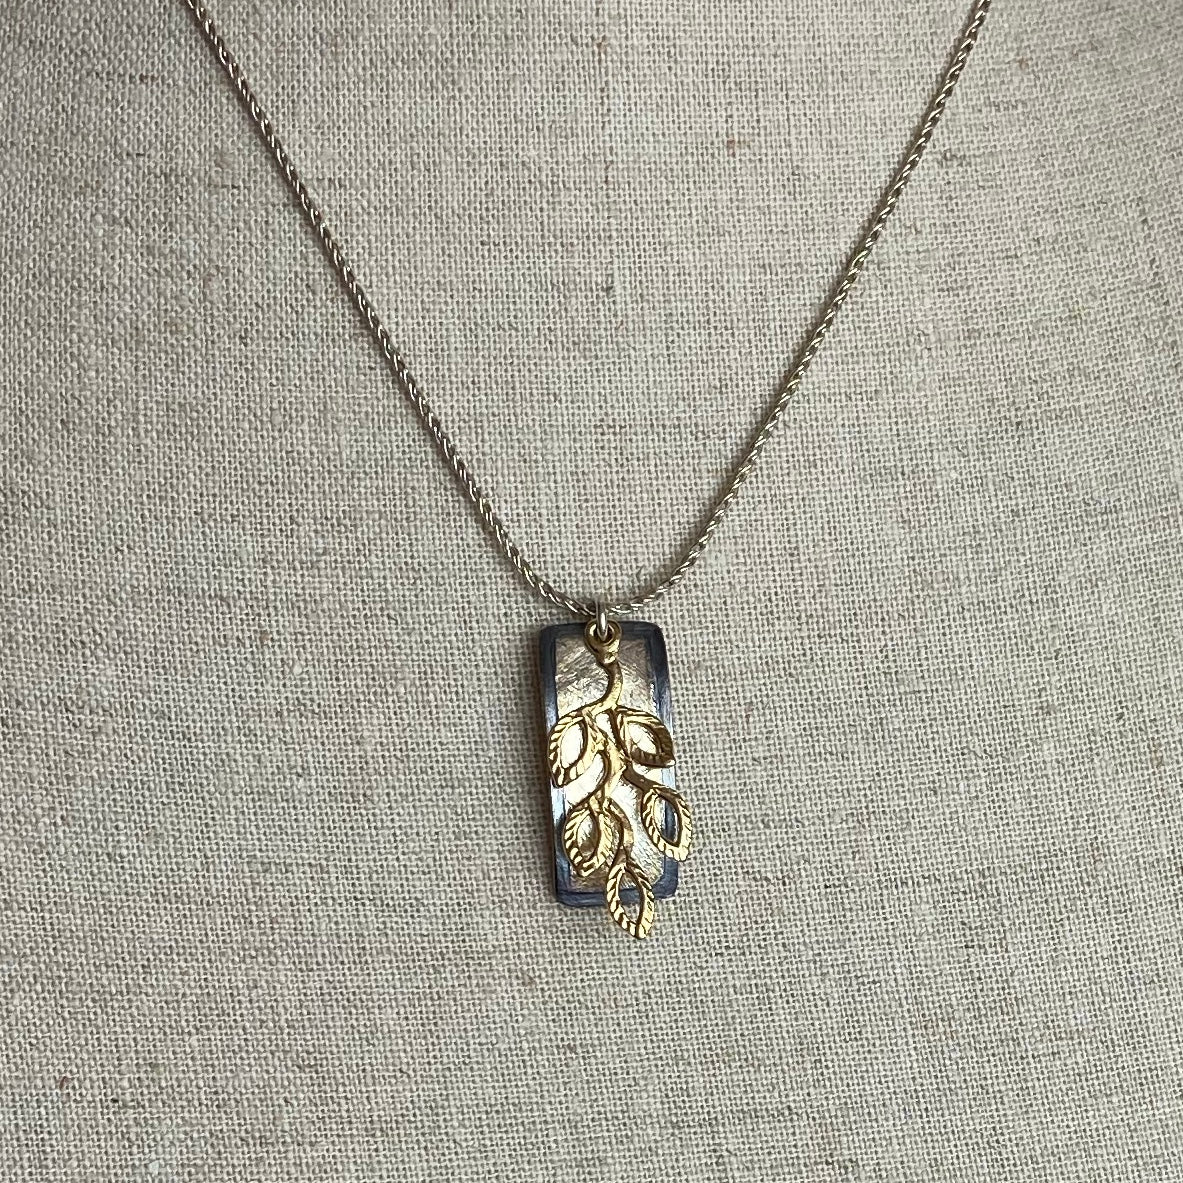 Gold & Silver Leaf Bar Necklace - The Nancy Smillie Shop - Art, Jewellery & Designer Gifts Glasgow